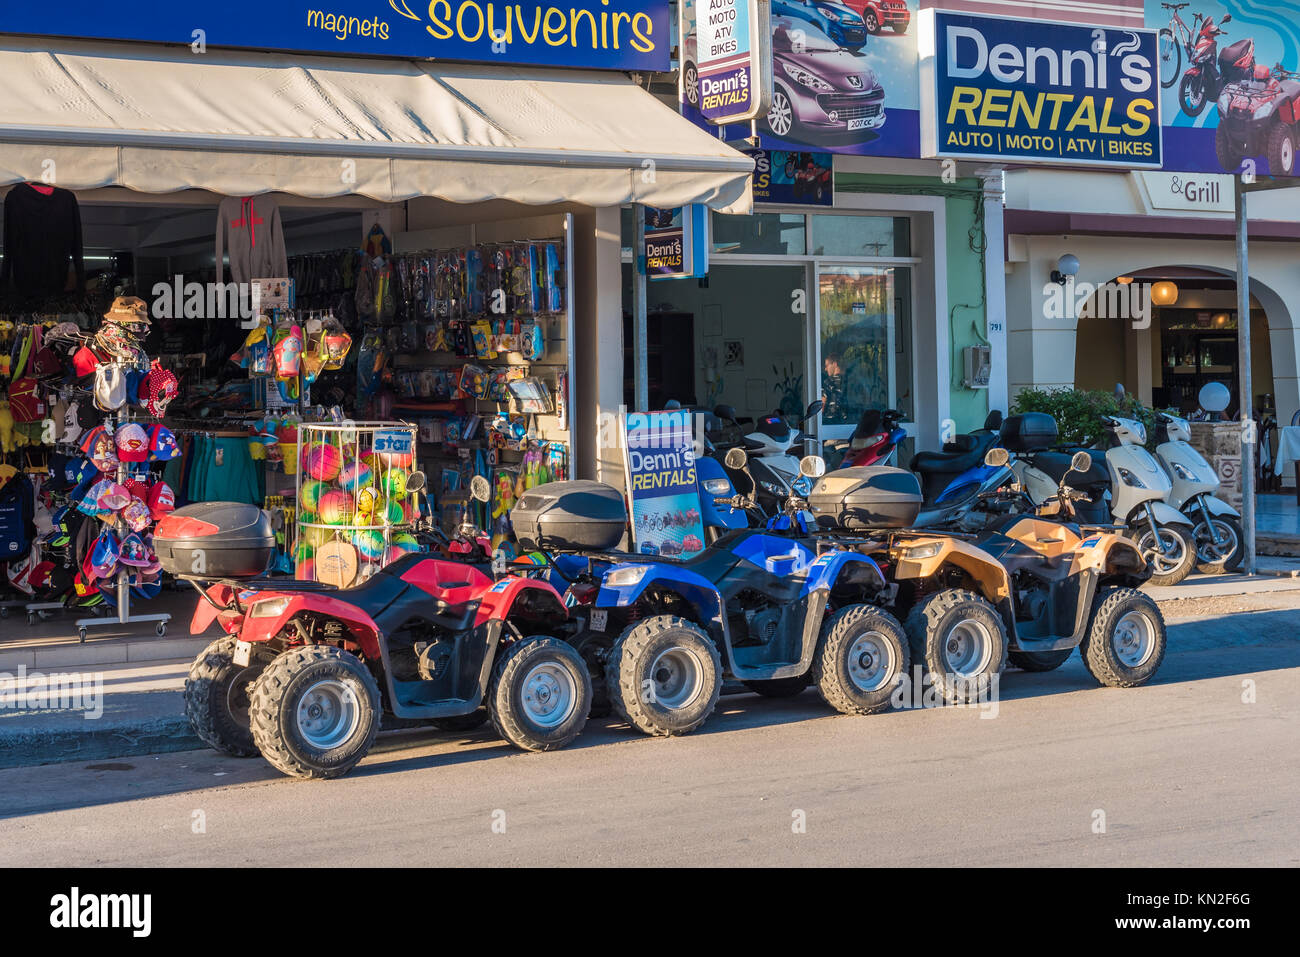 ZAKYNTHOS, Griechenland, 26. September 2017: Typische quad bike Bereit zum  Mieten auf der Straße. Insel Zakynthos, Griechenland Stockfotografie - Alamy